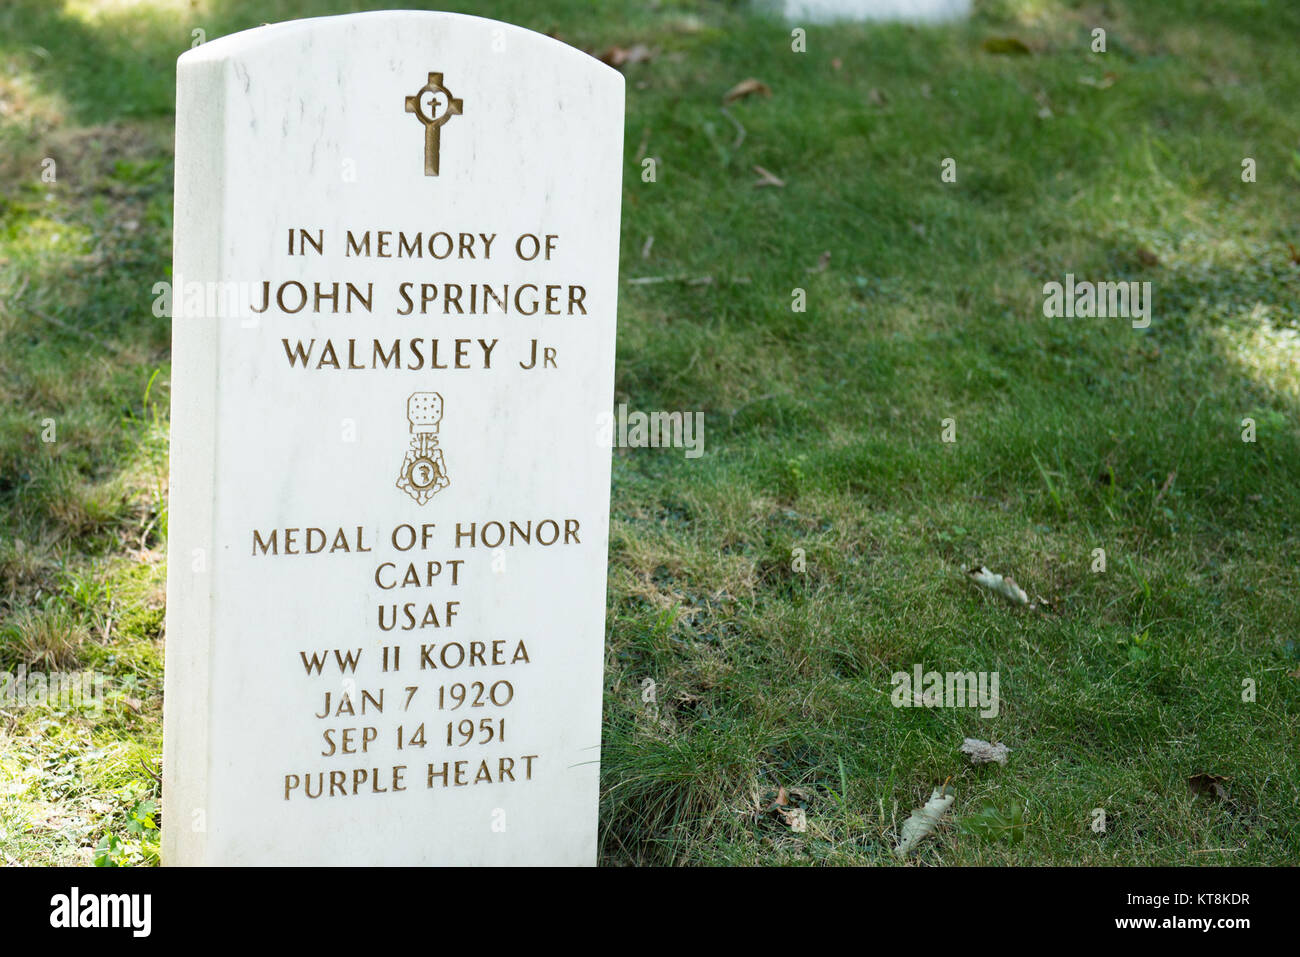 Us Air Force Kapitän John Sprinter Walmsley Jr., geboren am Jan 7, 1920 und Sept. 14, 1951 starb, ist in Abschnitt MF, Grab45von Arlington National Cemetery festgehalten. Walmsley war eine Ehrenmedaille Empfänger. (U.S. Armee Foto von Rachel Larue/freigegeben) Stockfoto